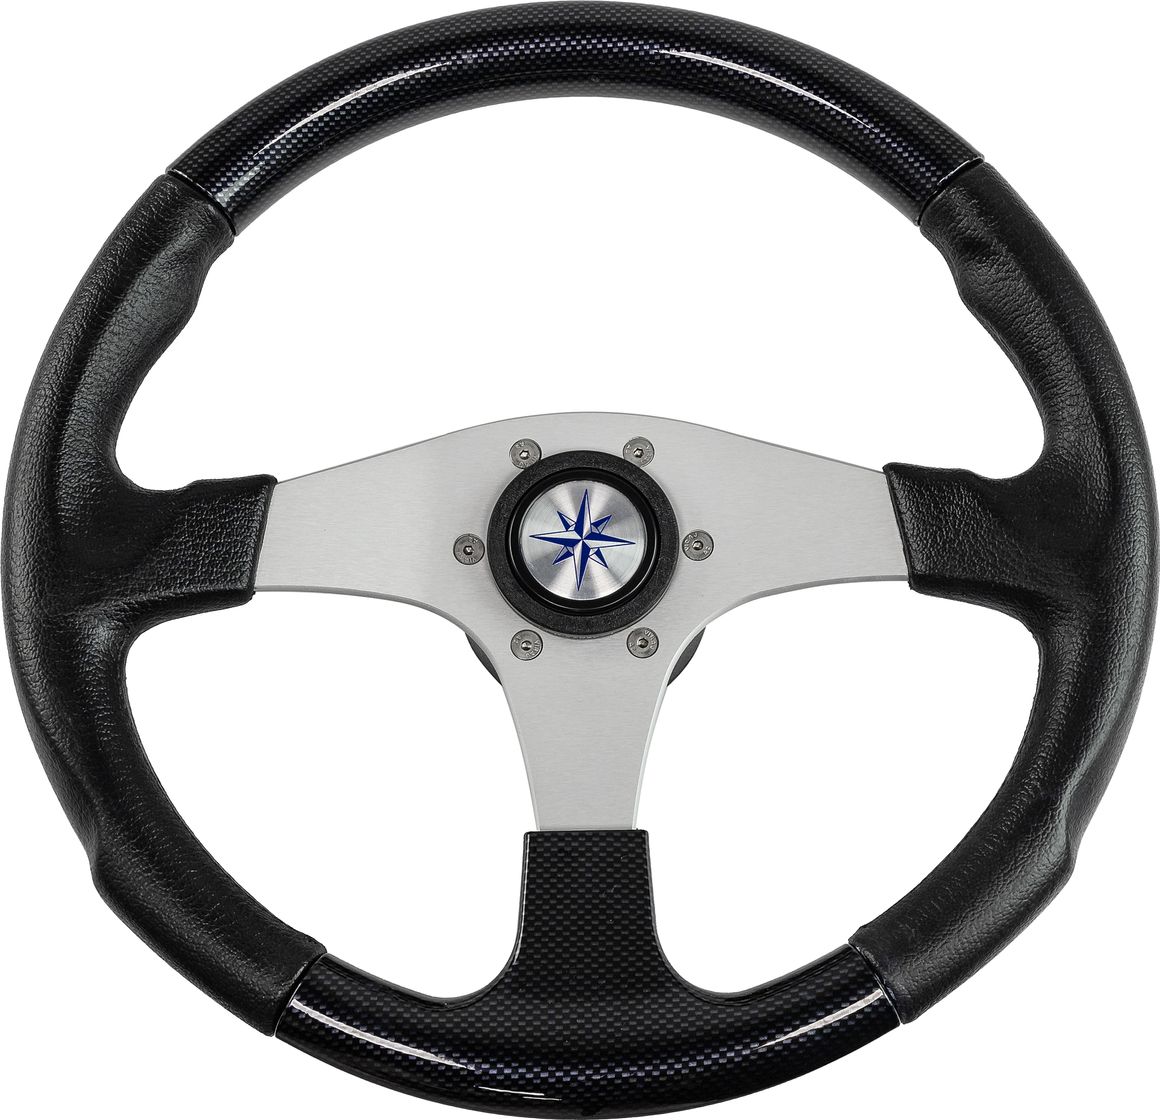 Рулевое колесо EVO MARINE 2 обод черный, спицы серебряные д. 355 мм VN850001-35 рулевое колесо elba обод и спицы черные д 320 мм vn70312 01